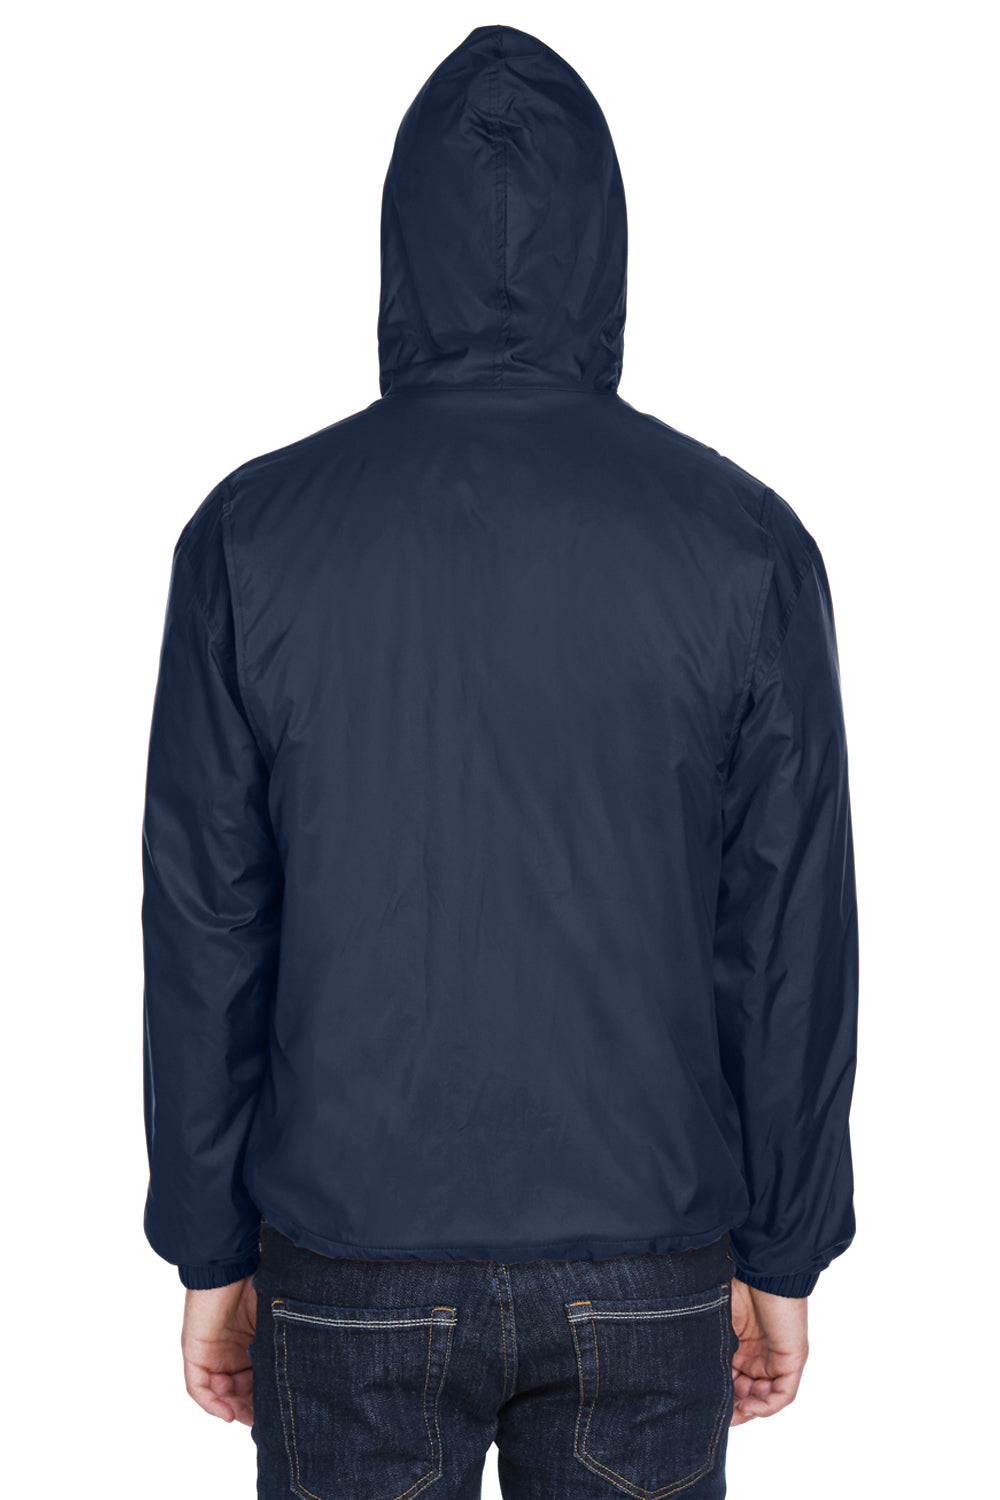 UltraClub 8915 Mens Wind & Water Resistant Full Zip Hooded Jacket Navy Blue Back